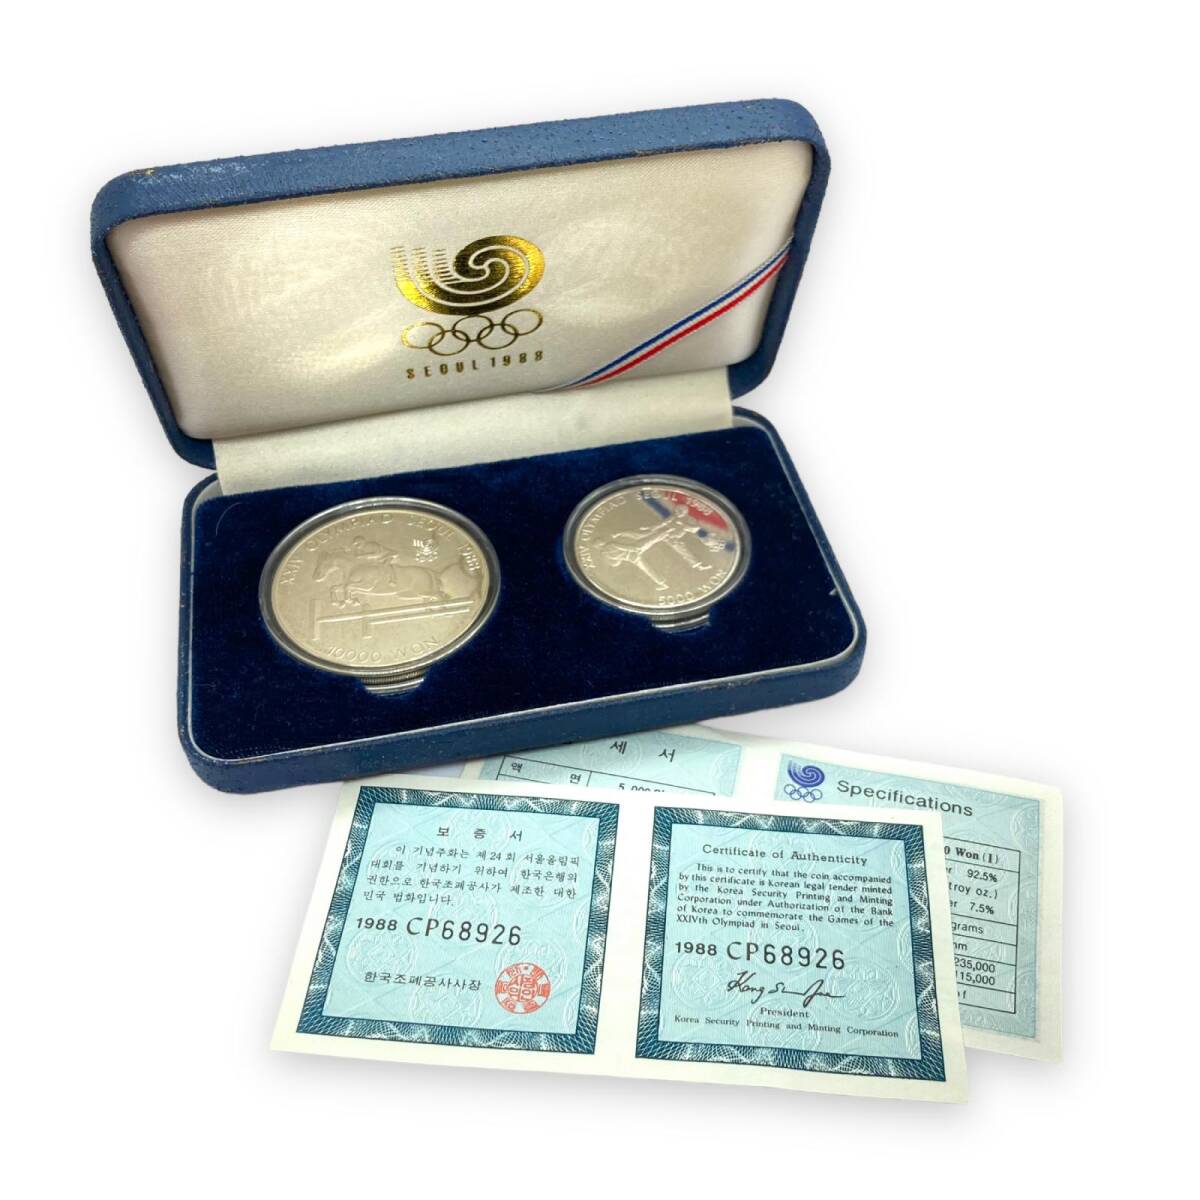 ソウルオリンピック 1988年 記念コイン セット 10000ウォン 5000ウォン 計2枚 コインの画像1